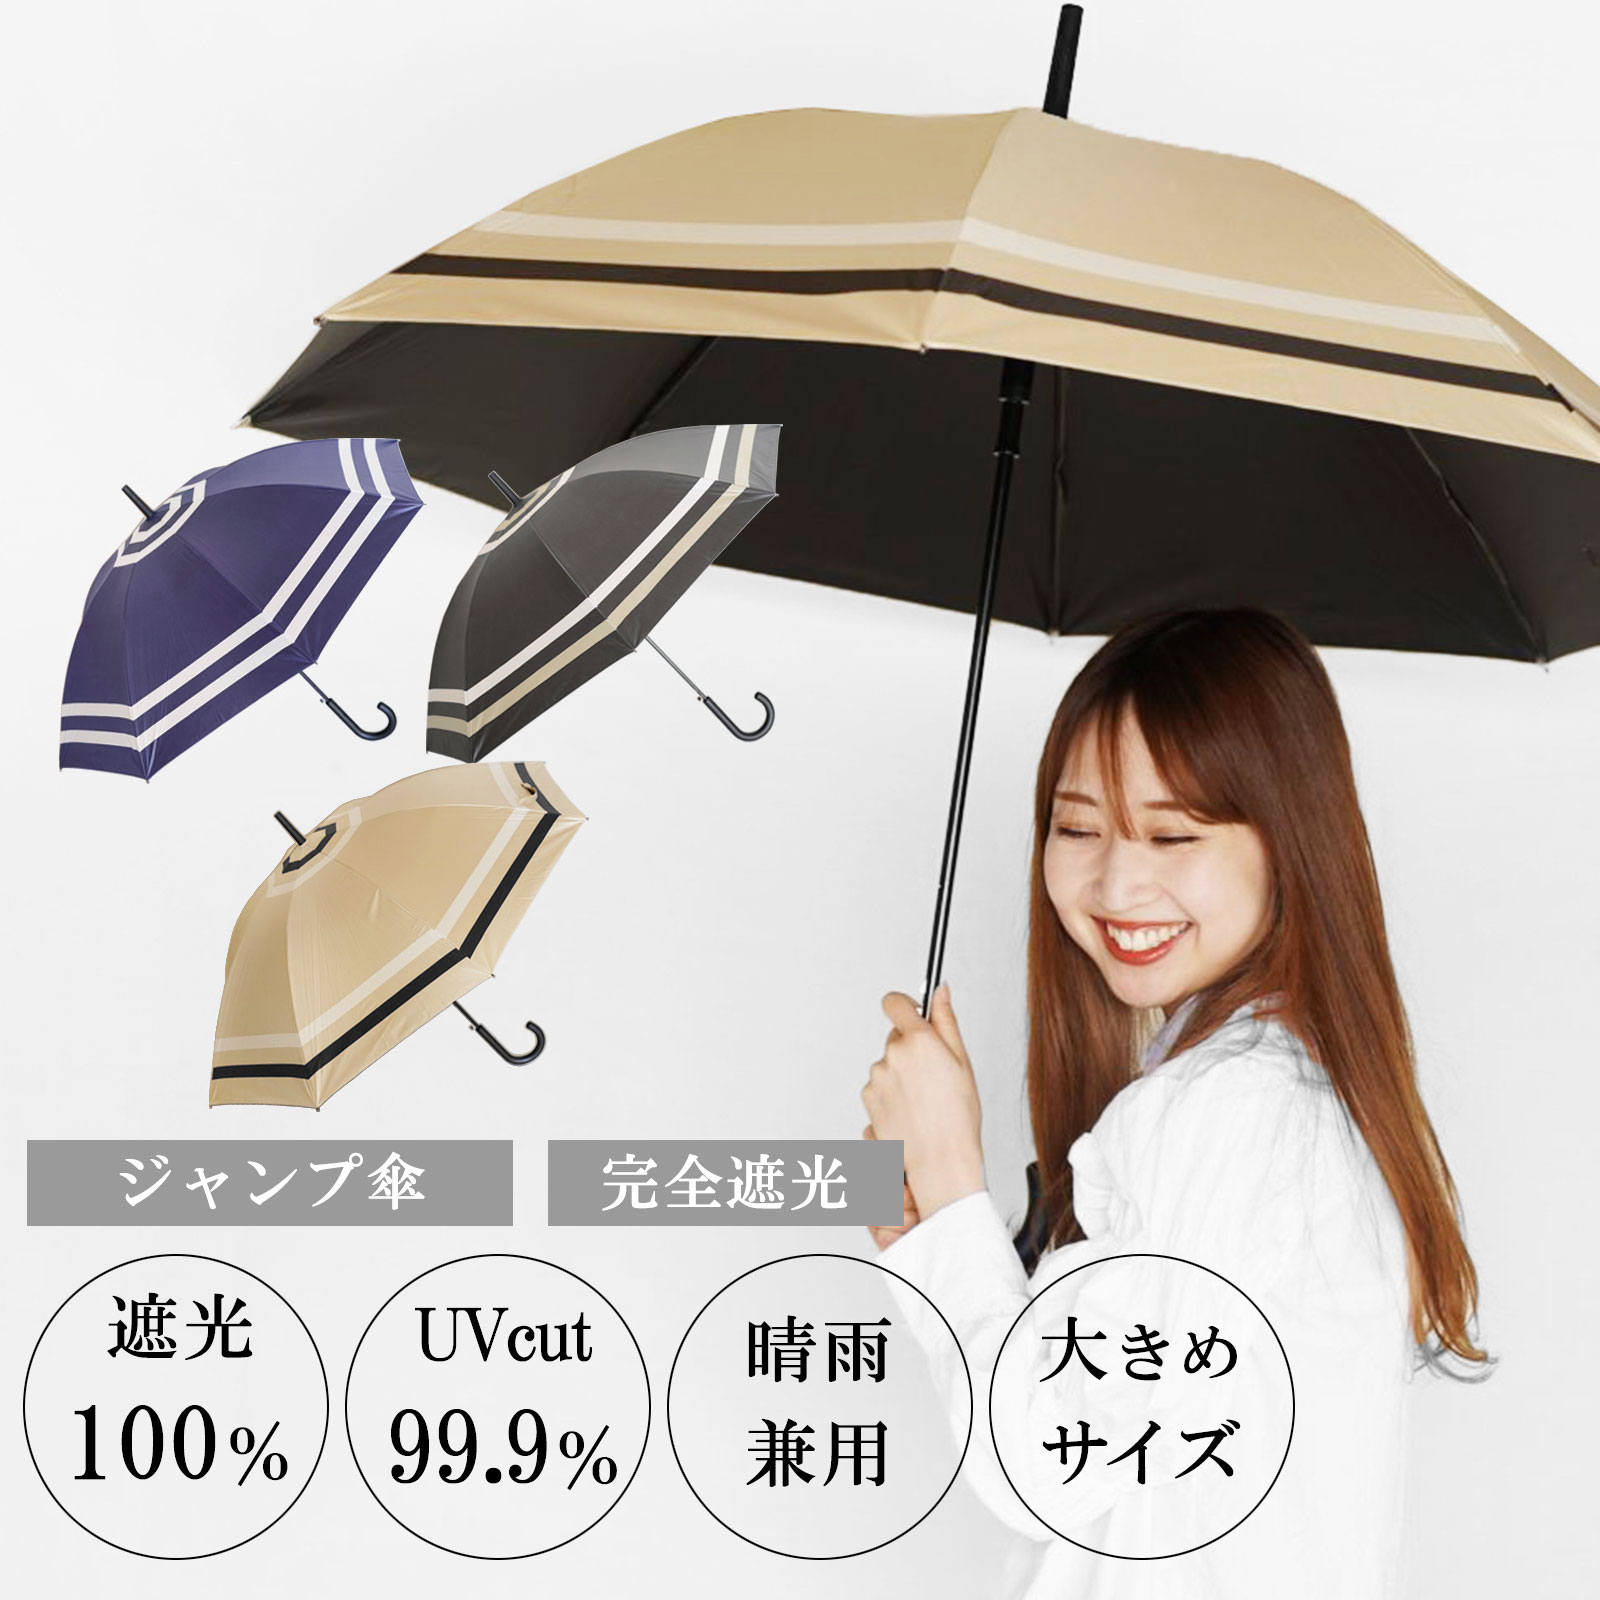 安いサンバリア100 日傘の通販商品を比較 | ショッピング情報のオーク 